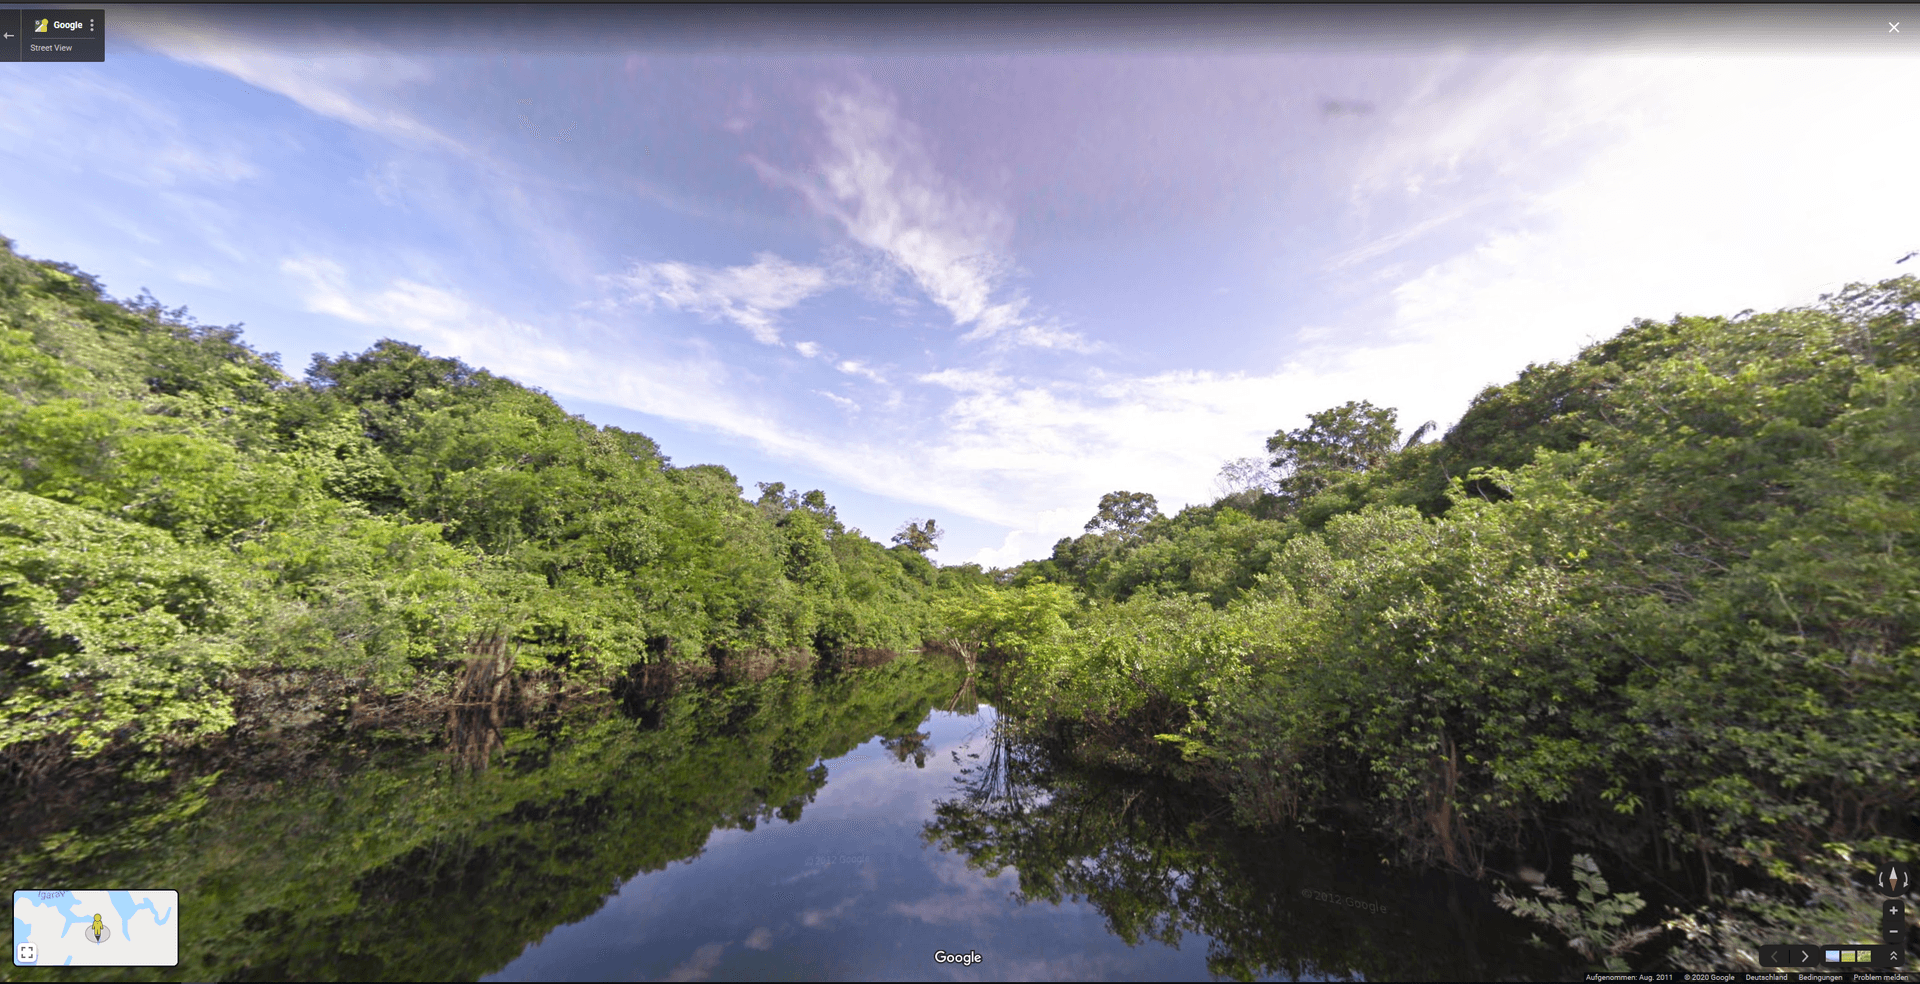 6.400 km lang ist der Amazonas. Mit Google Maps lässt sich darauf eine Bootsfahrt unternehmen, ganz ohne Angst vor Krokodilen.